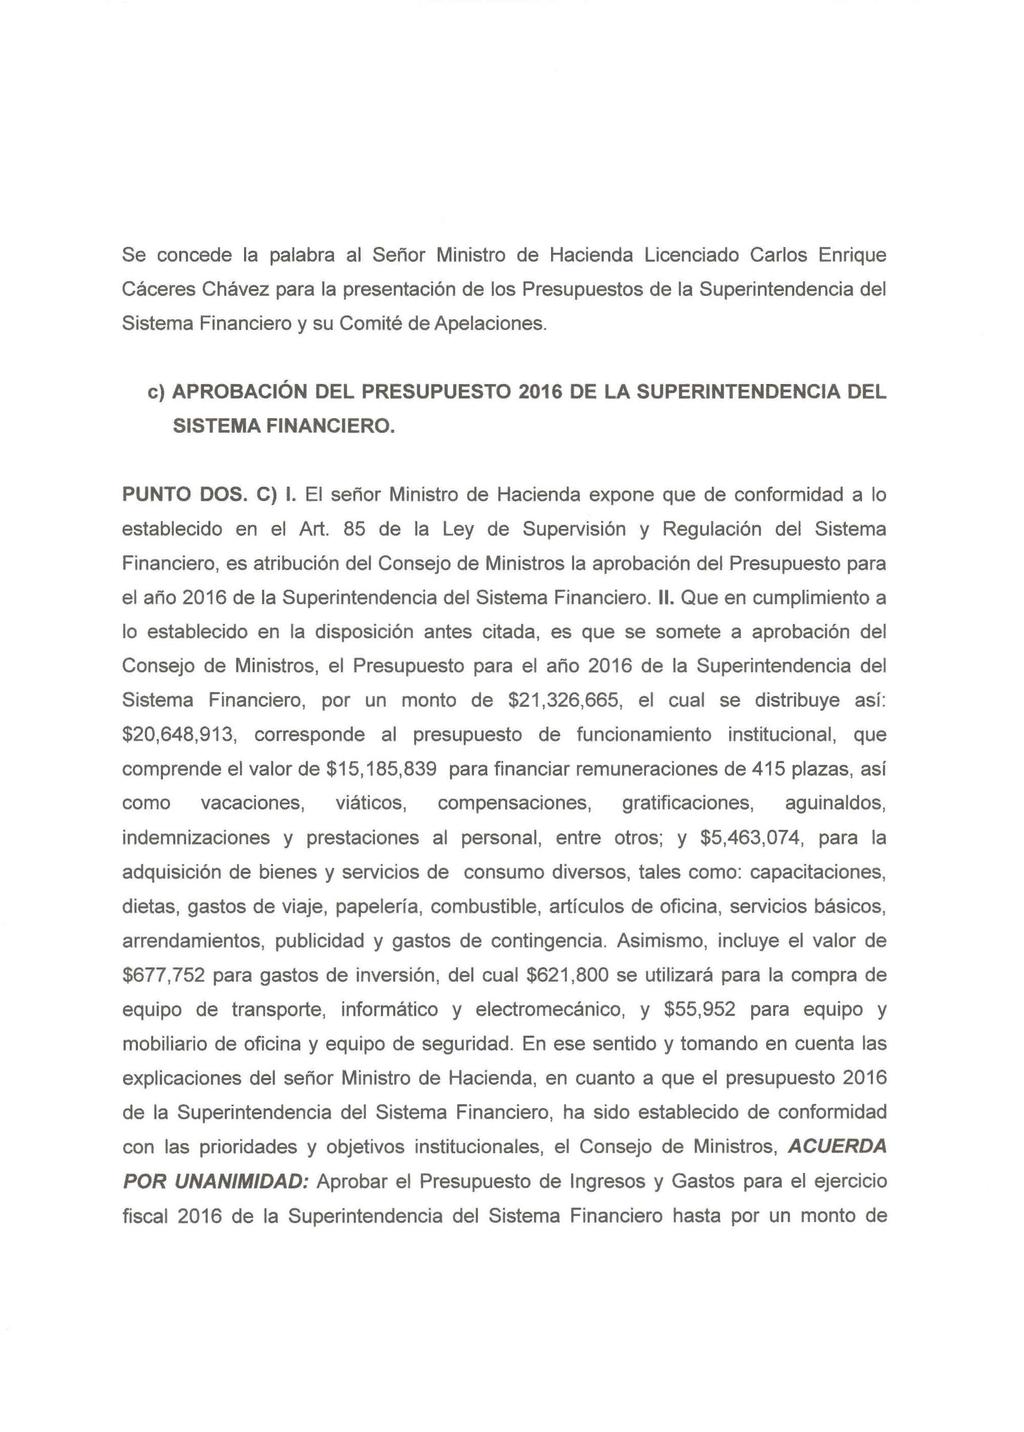 Se concede la palabra al Señor Ministro de Hacienda Licenciado Carlos Enrique Cáceres Chávez para la presentación de los Presupuestos de la Superintendencia del Sistema Financiero y su Comité de